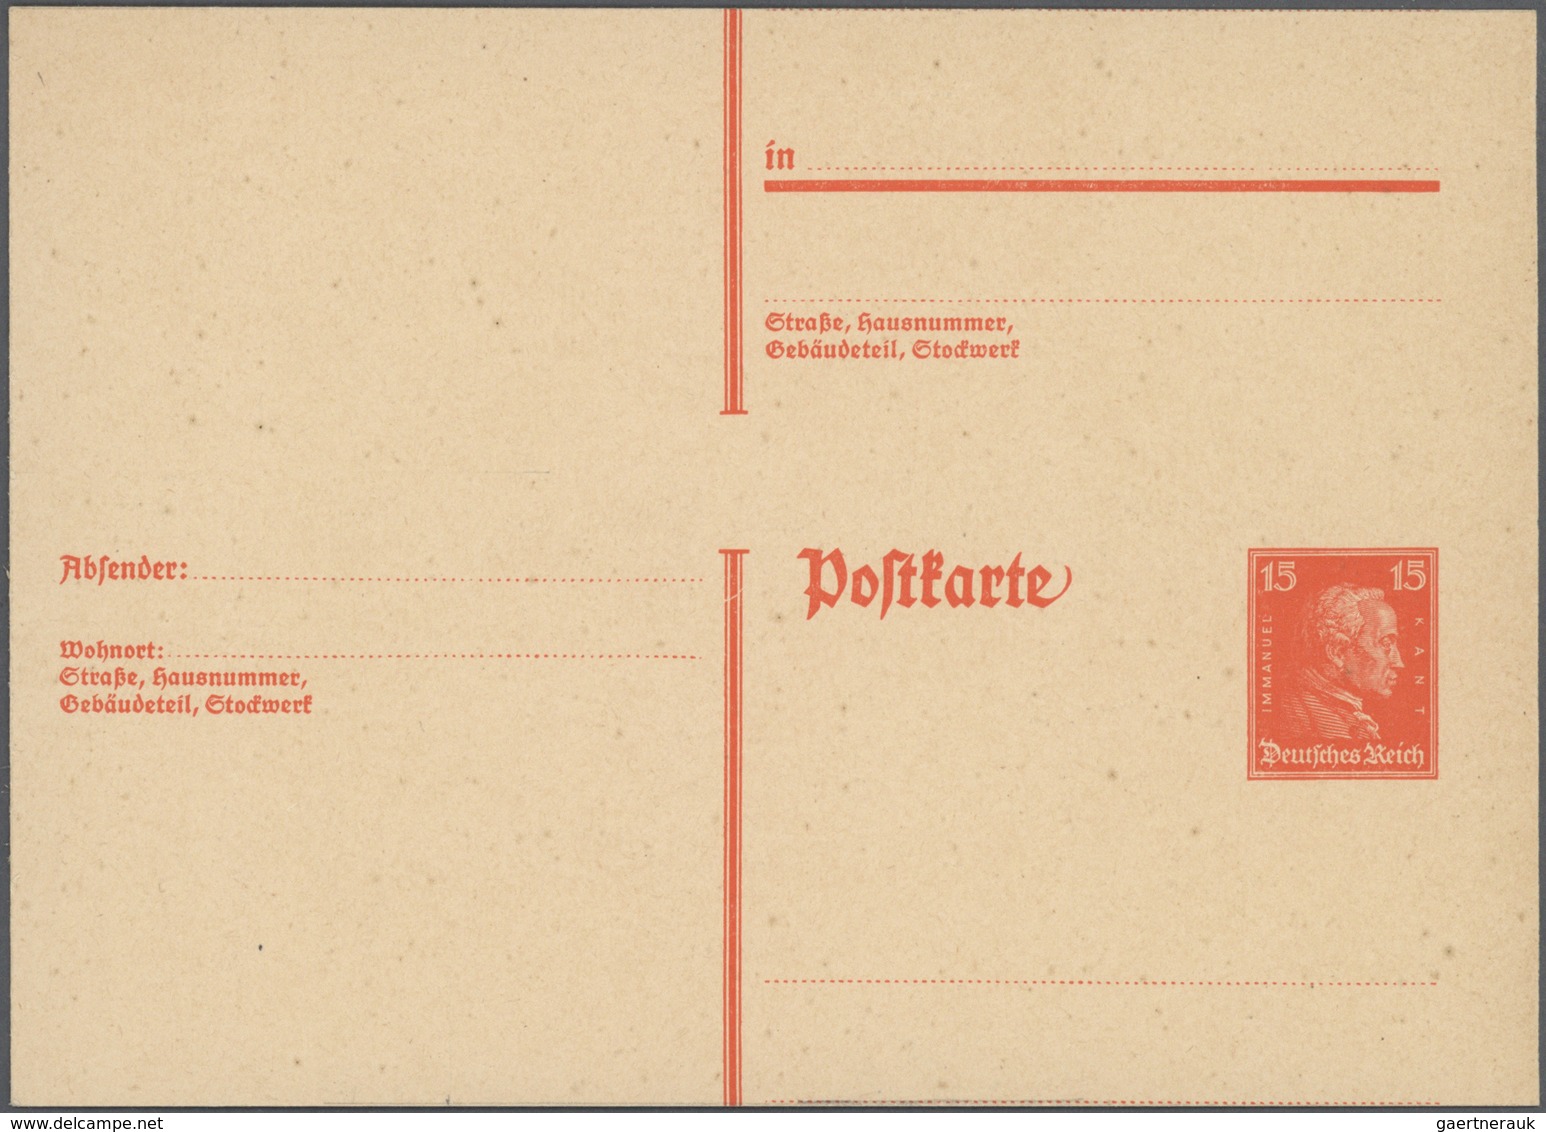 Deutsches Reich - Ganzsachen: 1875/1932, umfangreiche, ungebrauchte und gebrauchte Ganzsachenkarten-